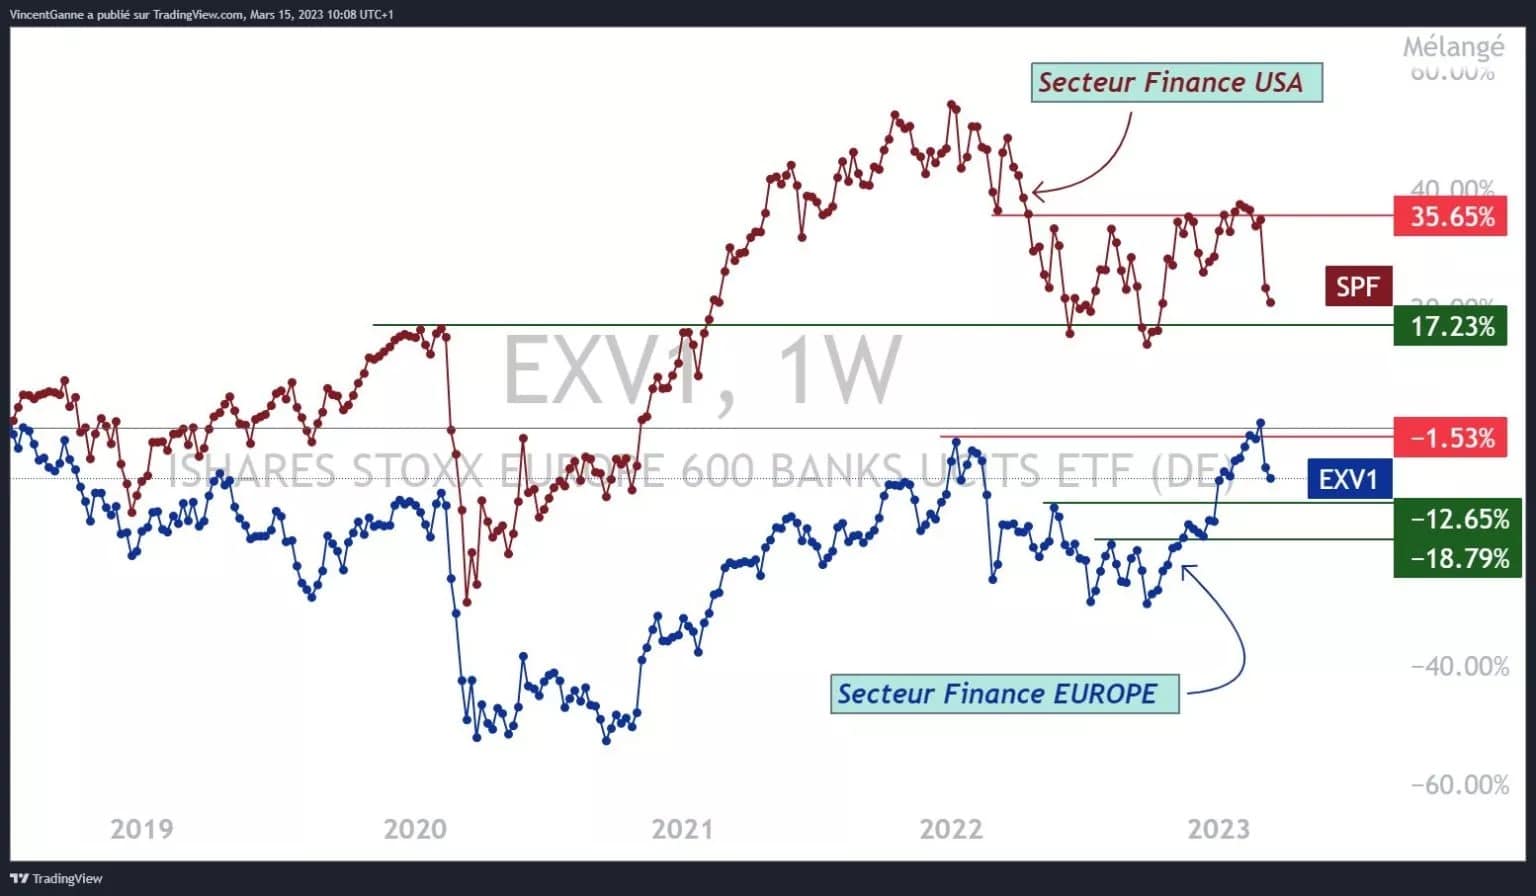 Graf porovnávající indexy bankovního/finančního sektoru amerického akciového trhu a evropského akciového trhu